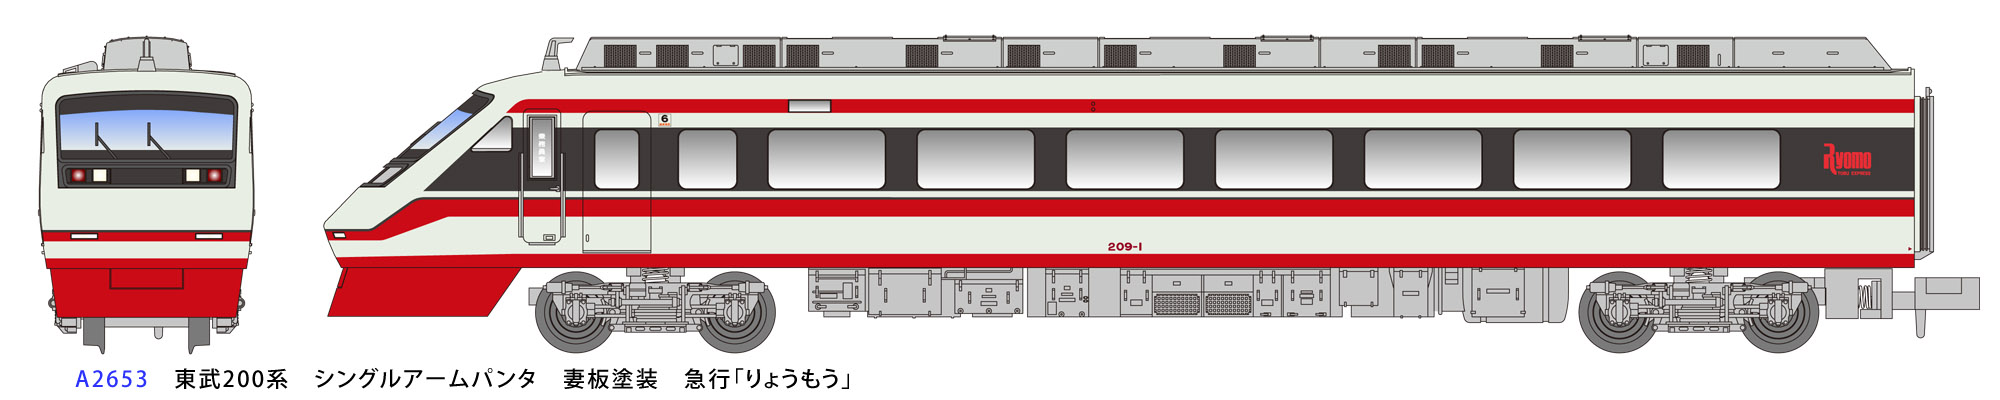 マスターピース 東武200系 りょうもう 別売り台車付き 6両キット 現状 